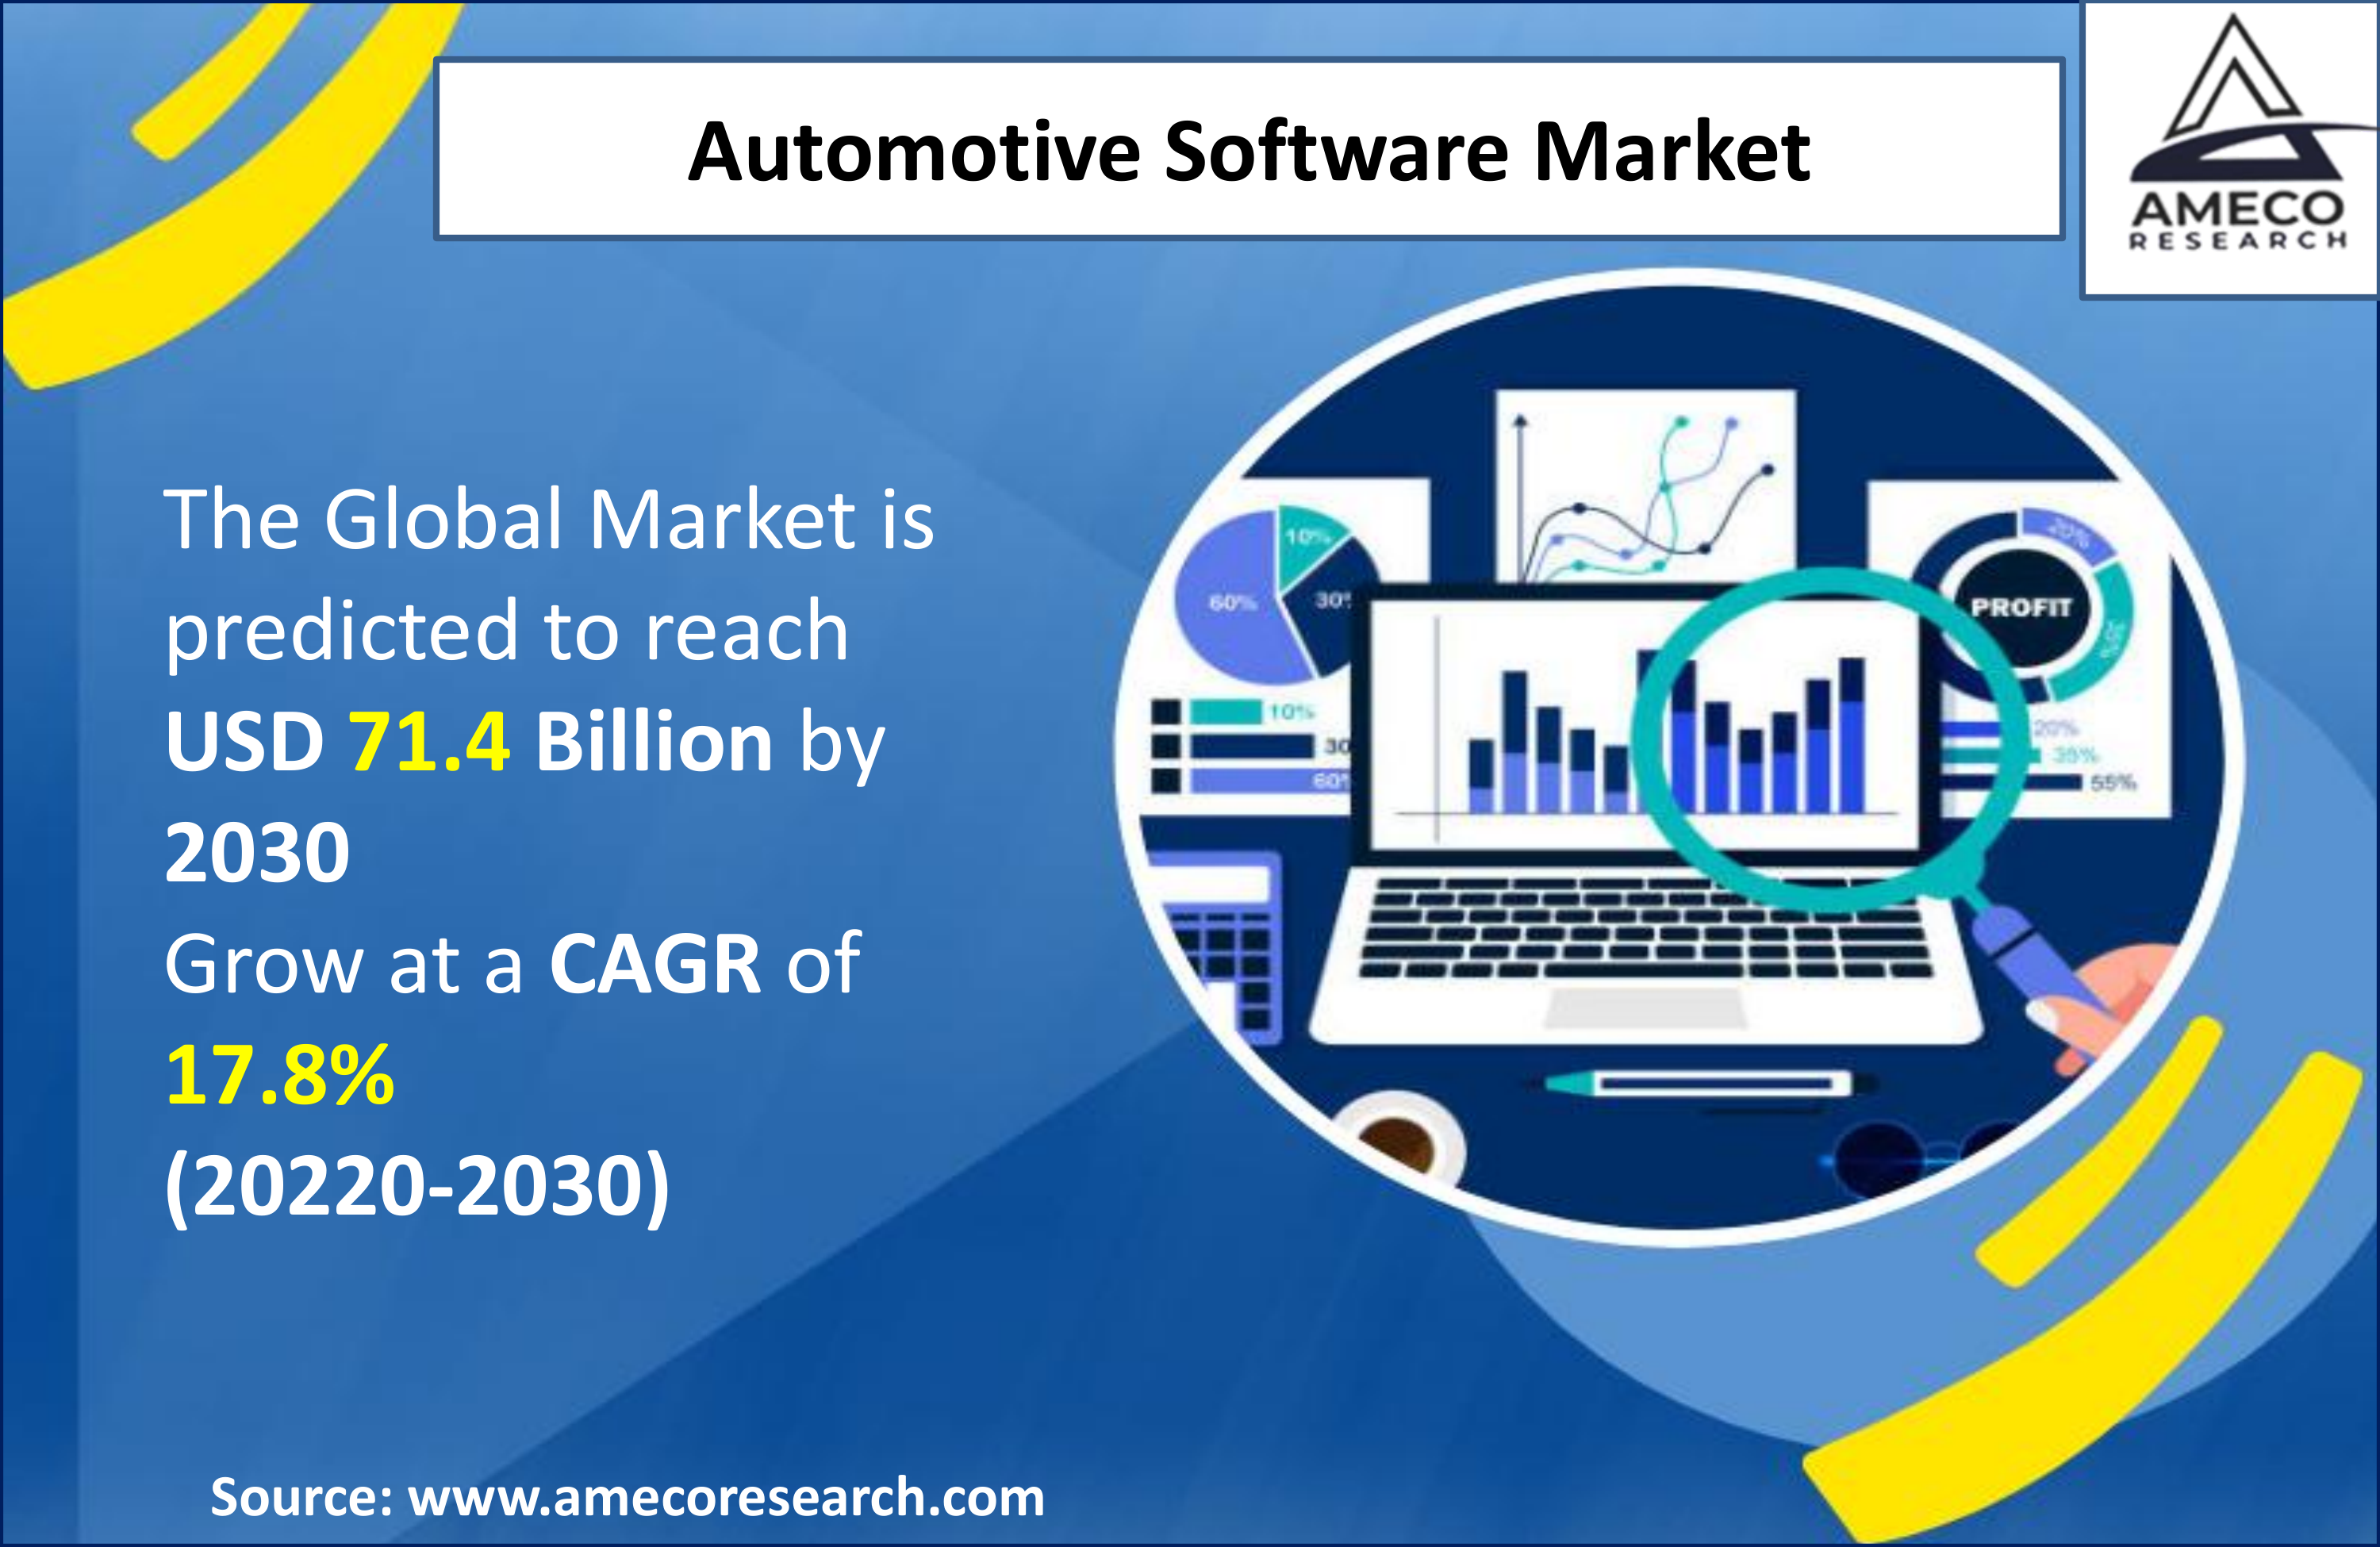 Automotive Software Market